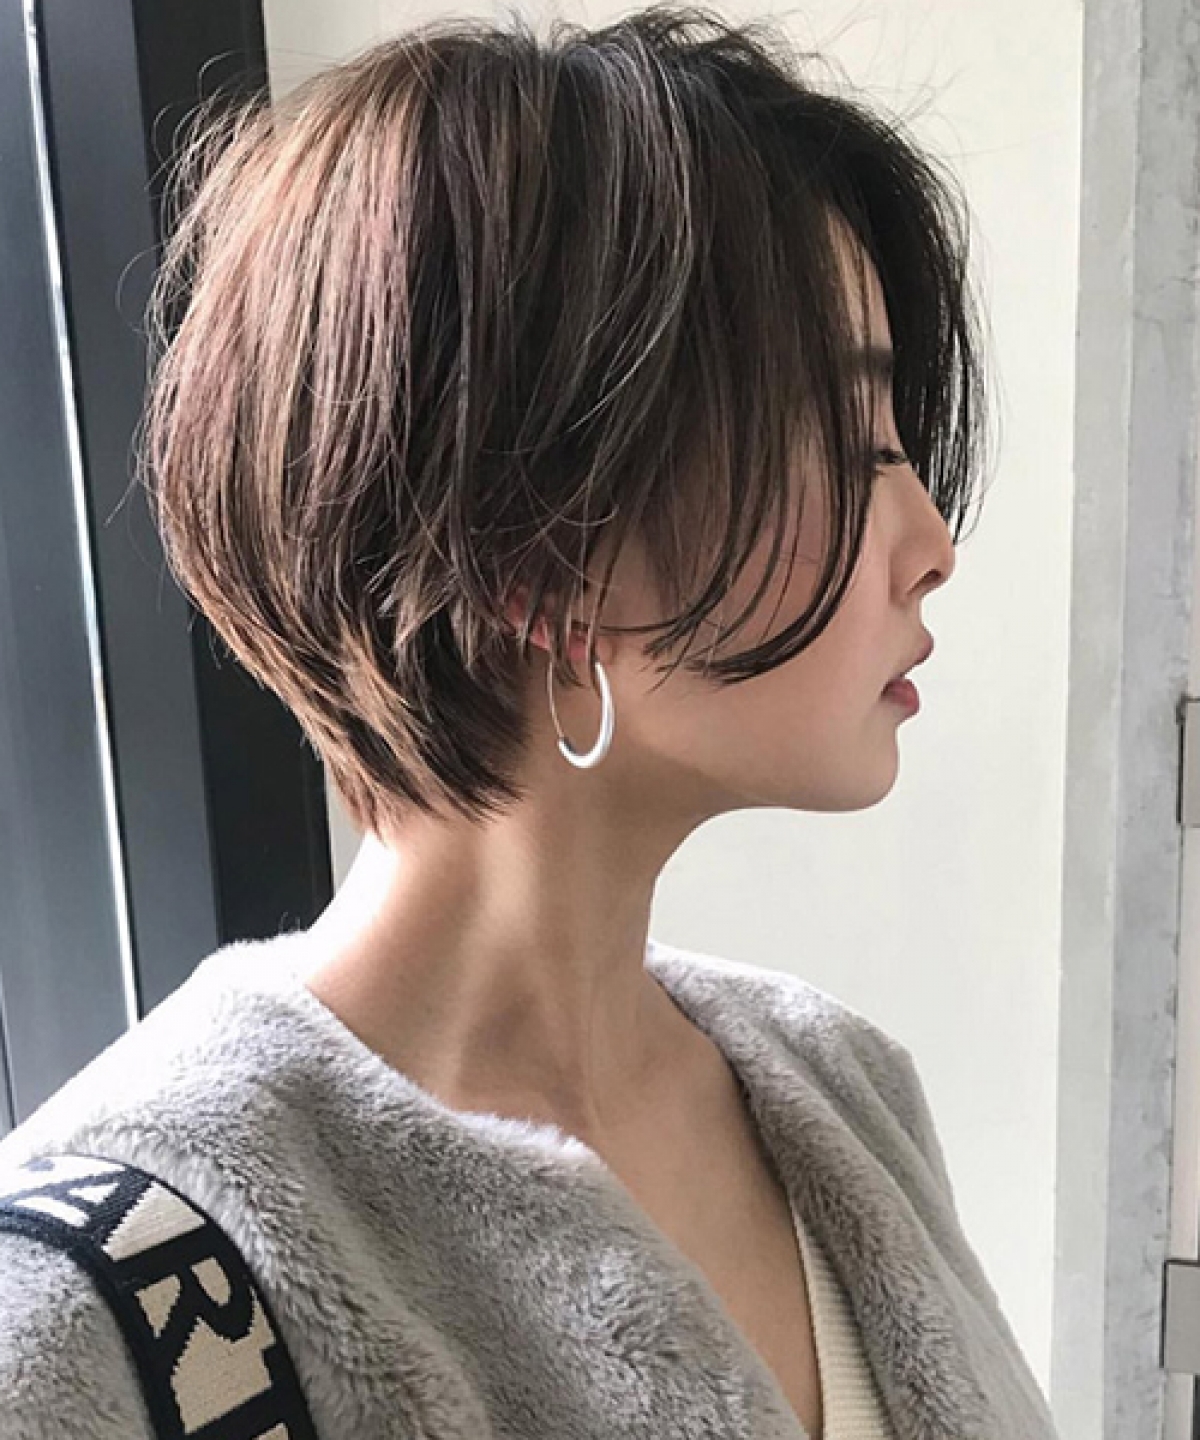 Share 111 Kiểu cắt tóc nam Layer ngắn Hàn Quốc tại nhà